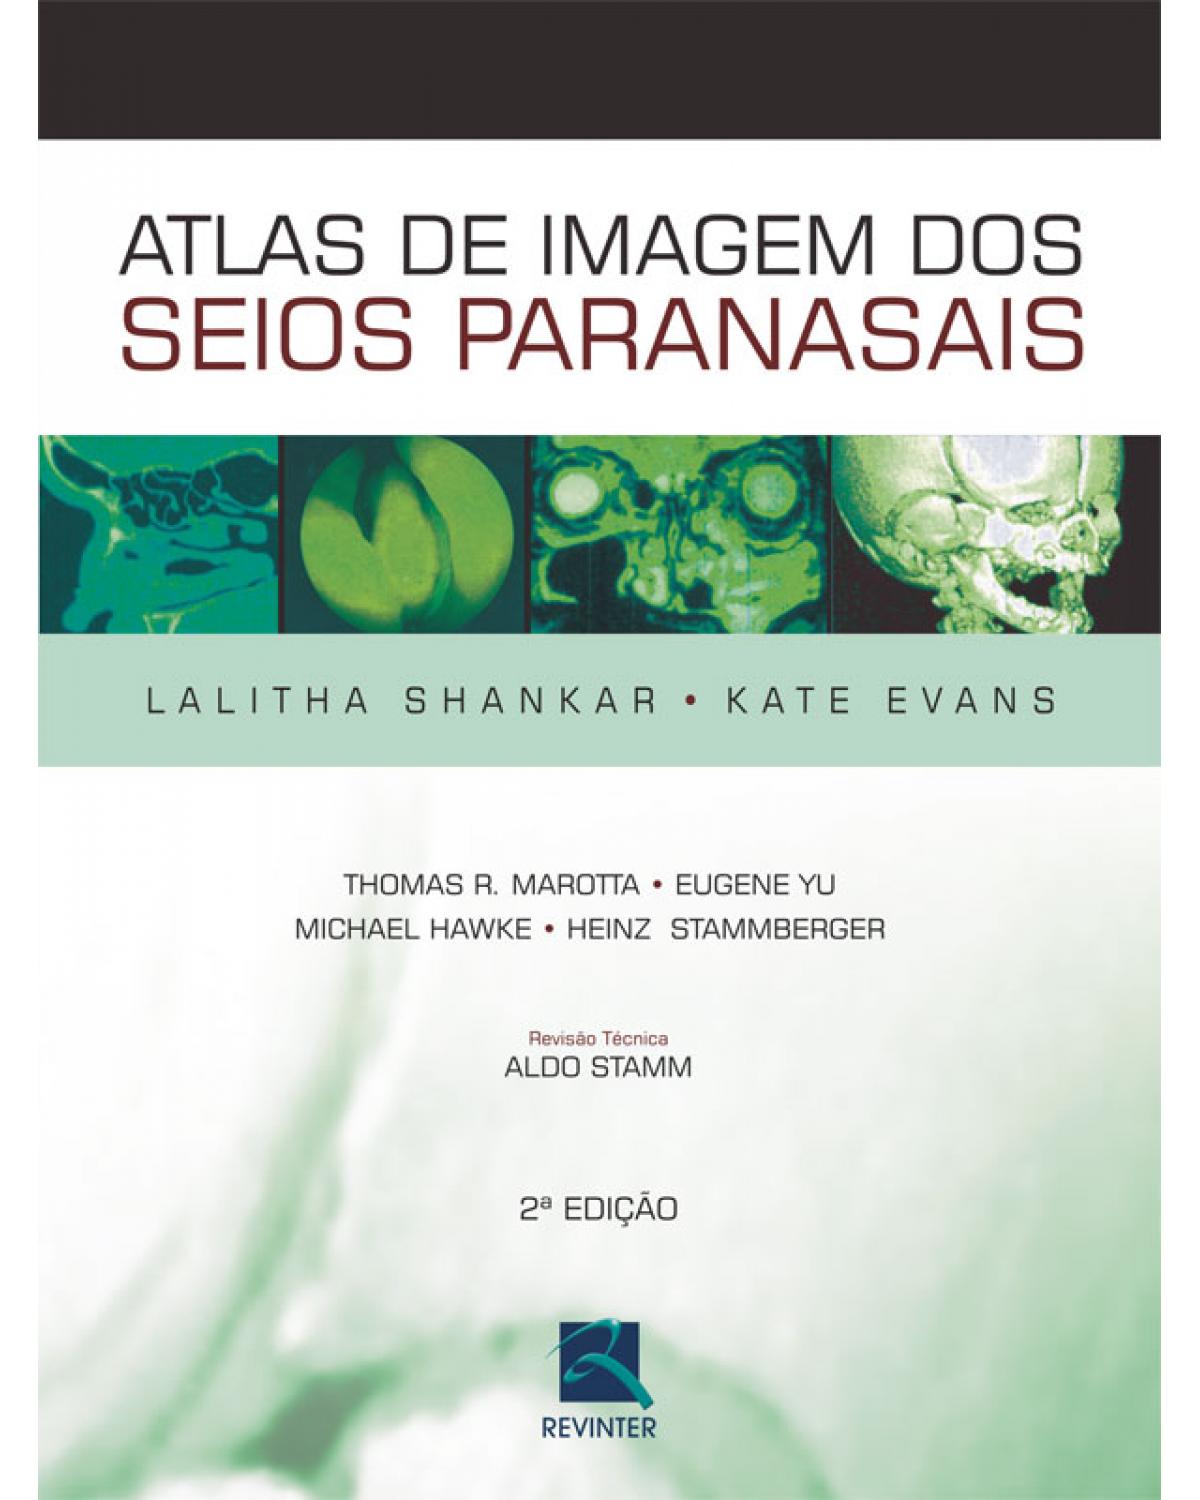 Atlas de imagem dos seios paranasais - 2ª Edição | 2007